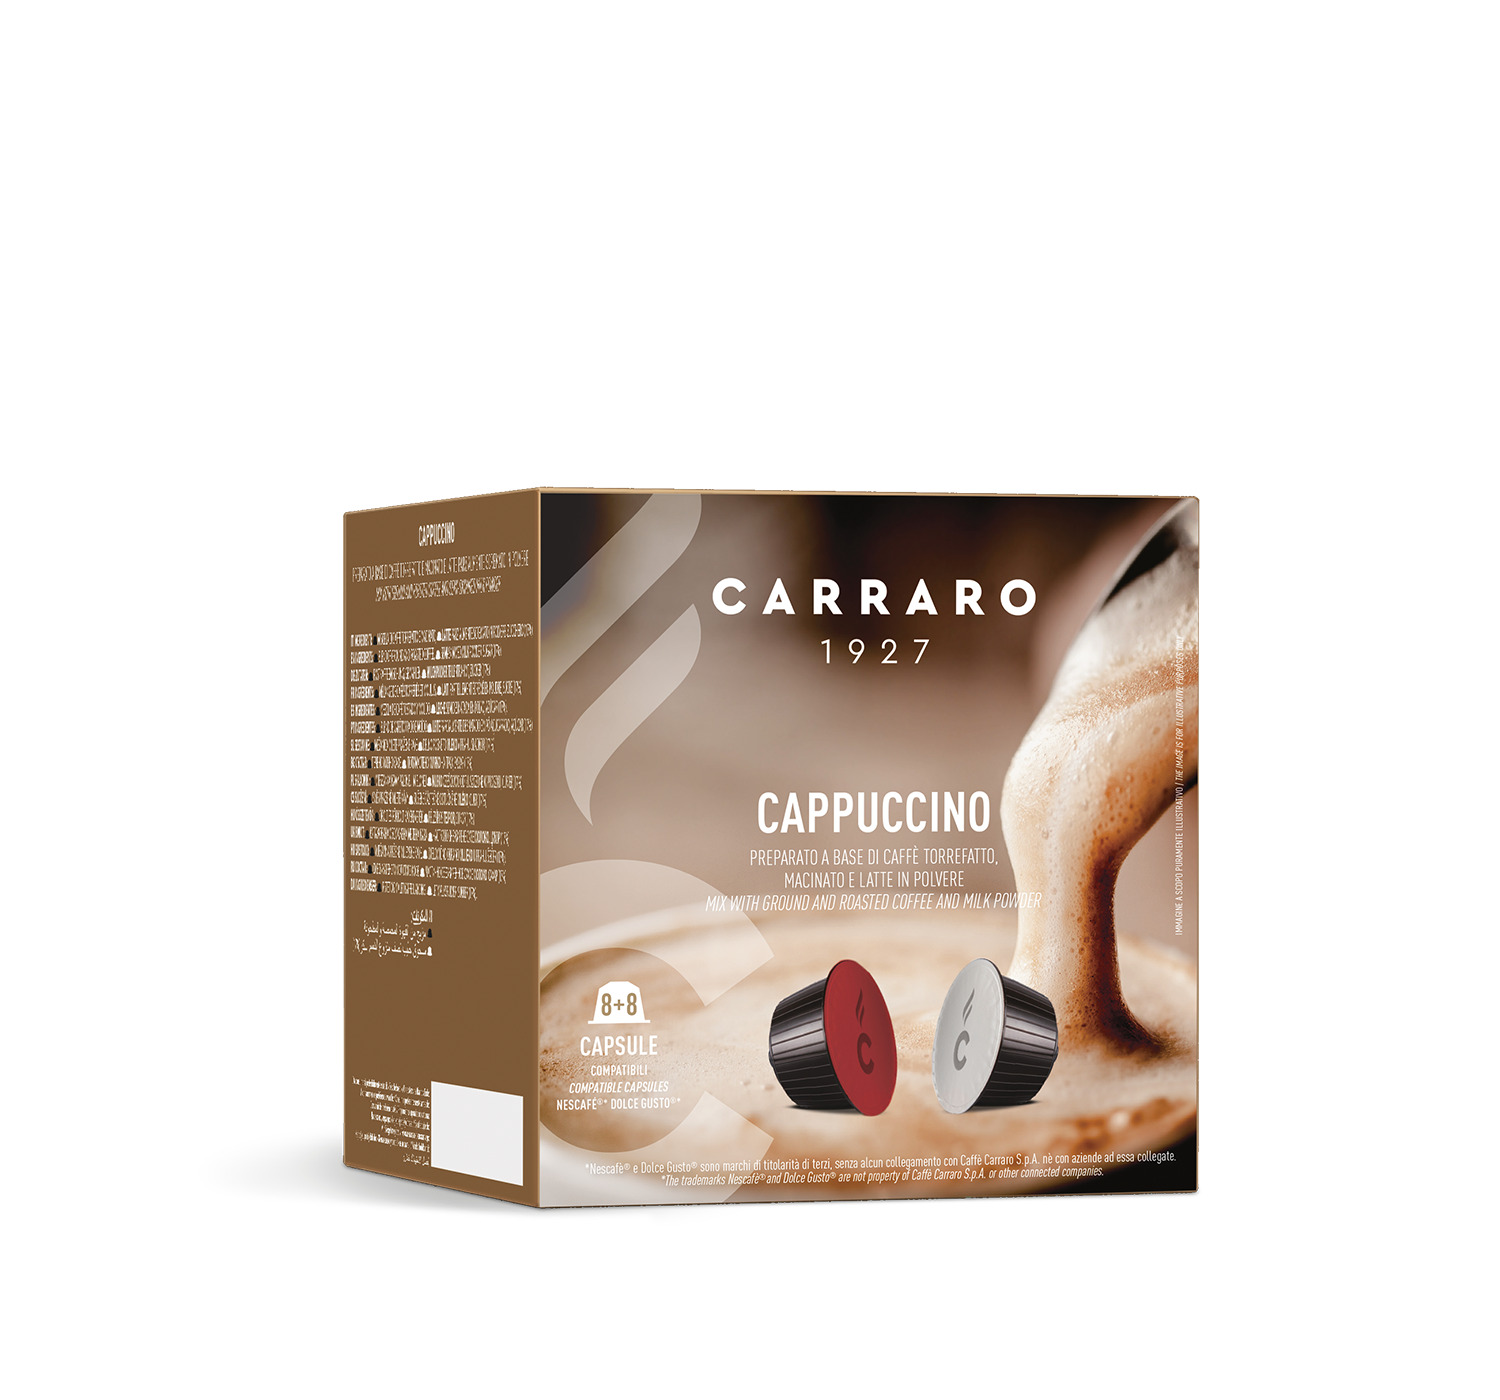 Capsules - Cappuccino – 16 Dolce Gusto®* compatible capsules - Shop online Caffè Carraro